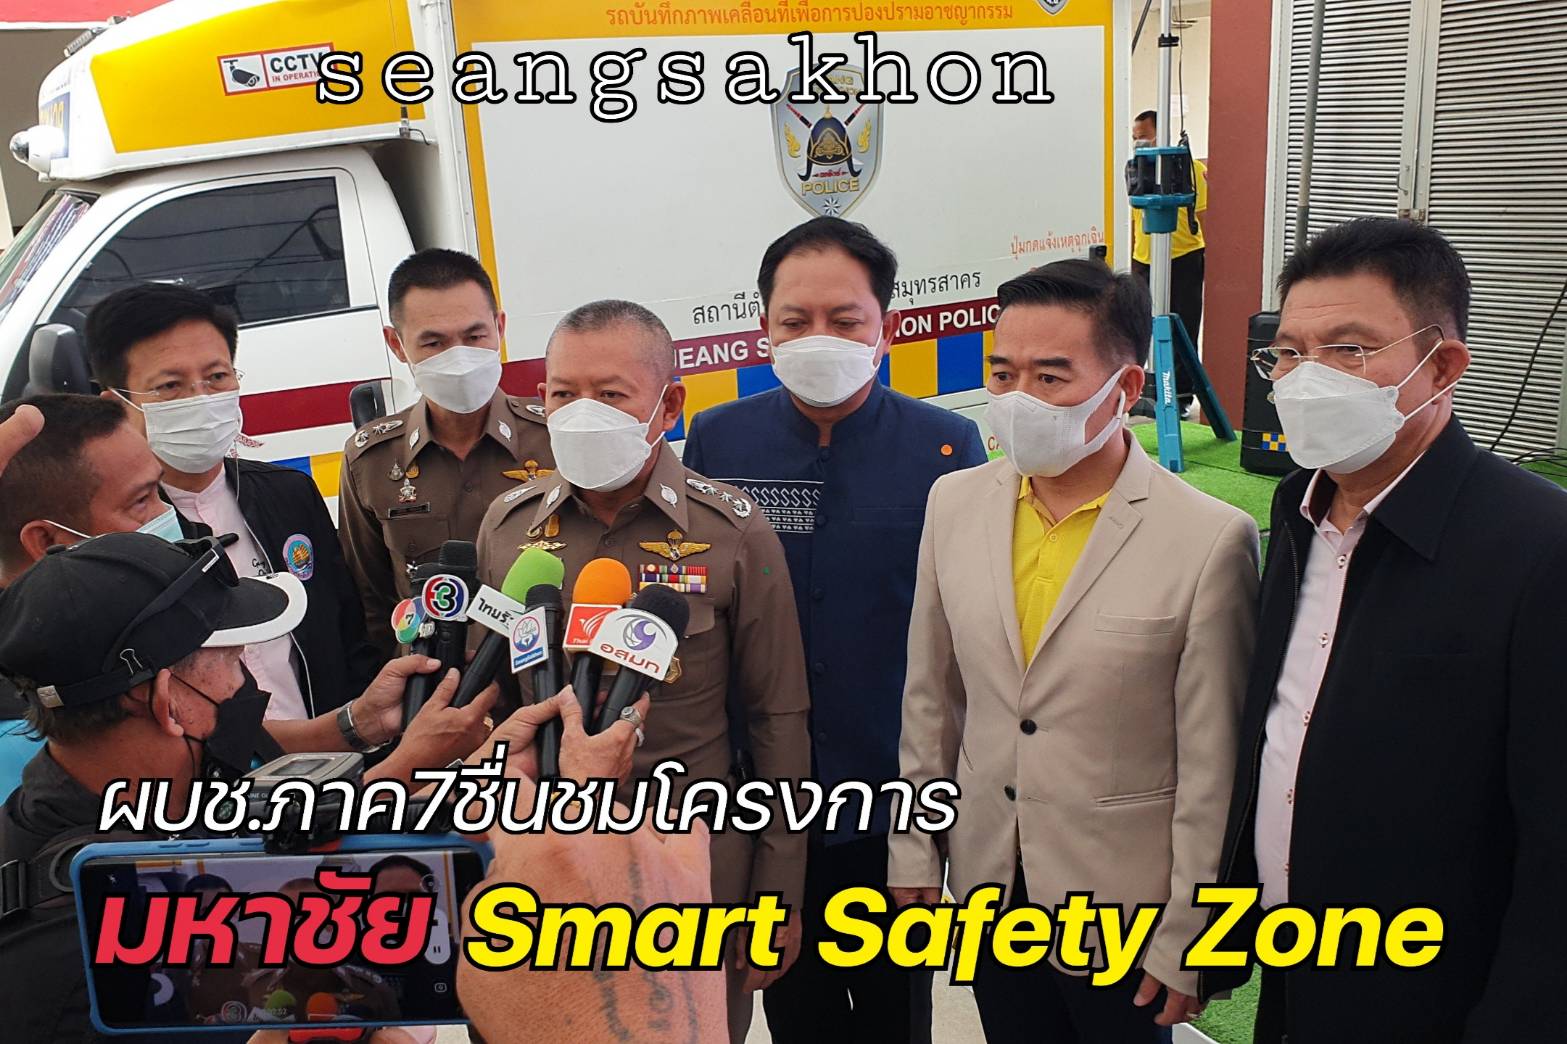 ผบช.ภ.7 ชื่นชมโครงการ มหาชัย Smart Safety Zone 4.0 นำร่อง 8 จังหวัด 104 สถานี ทั่วพื้นที่ภาค 7